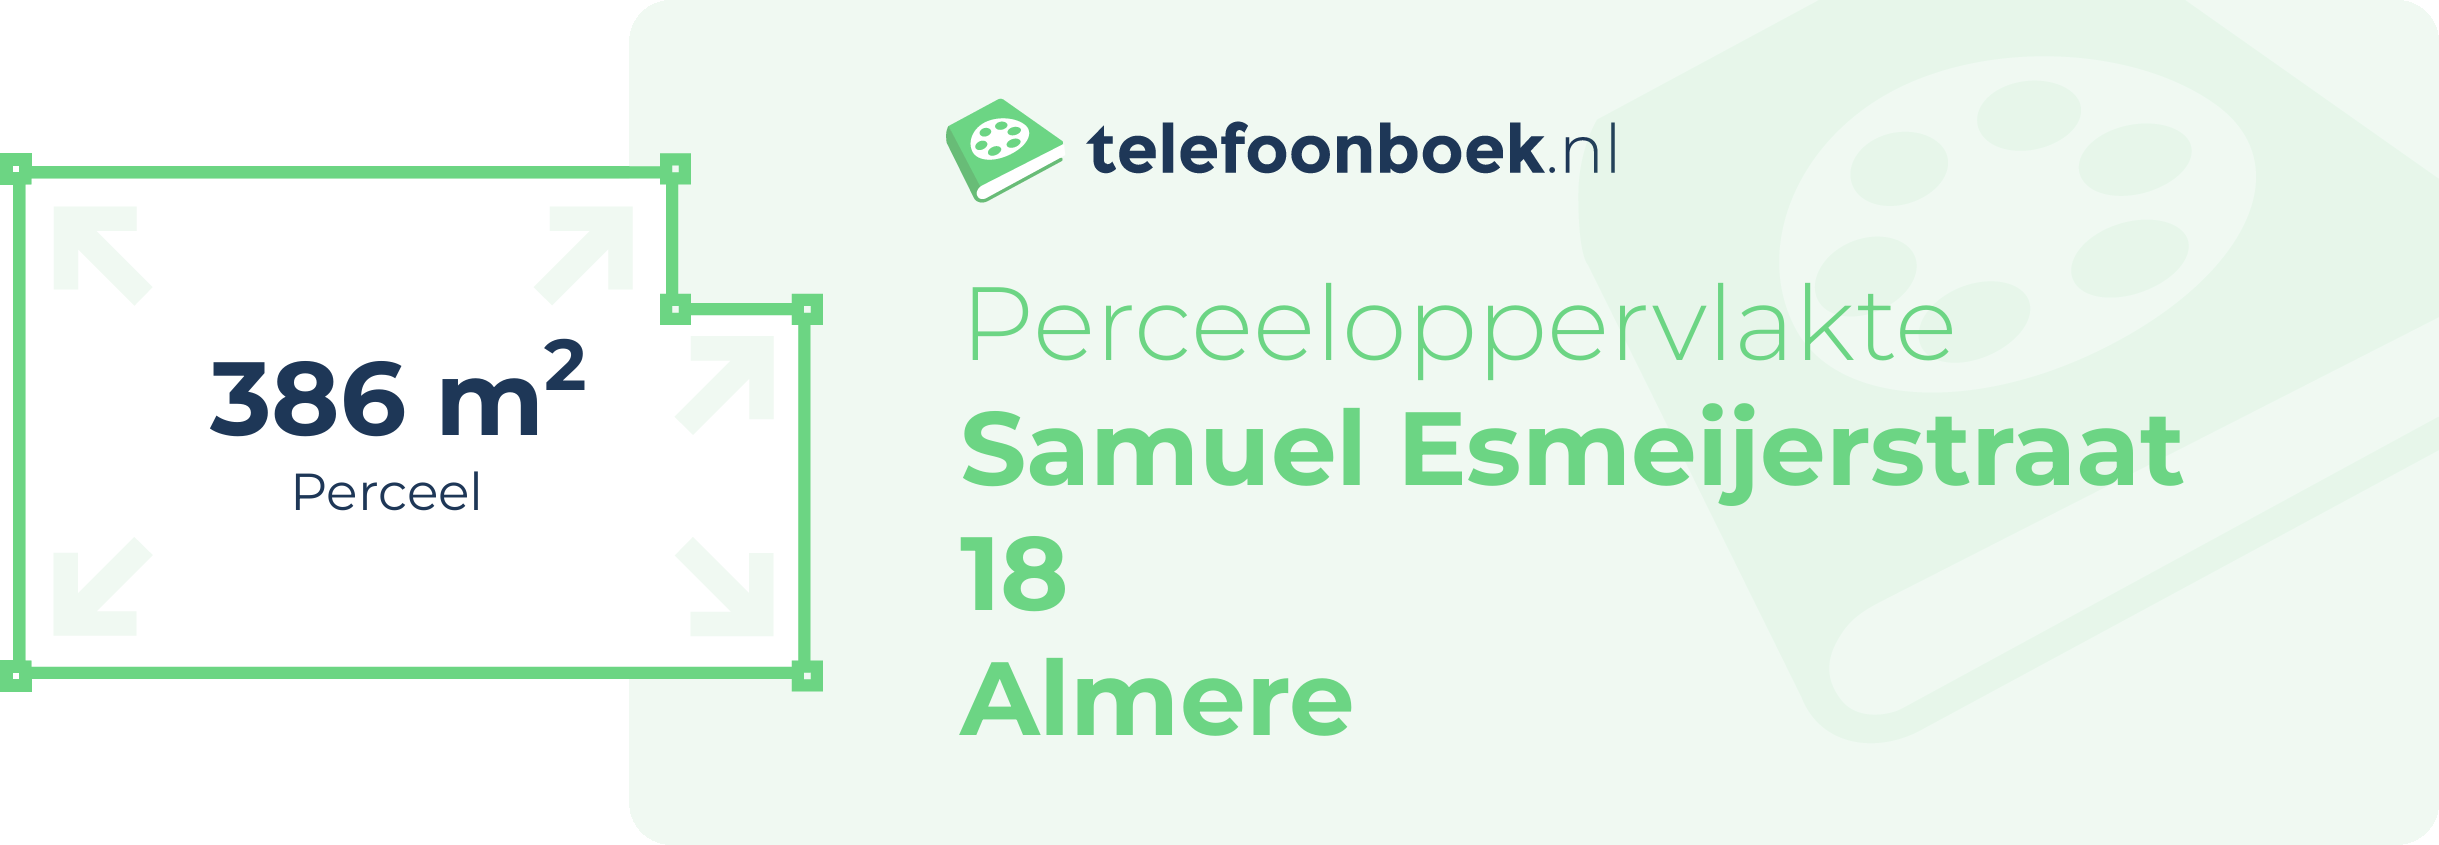 Perceeloppervlakte Samuel Esmeijerstraat 18 Almere